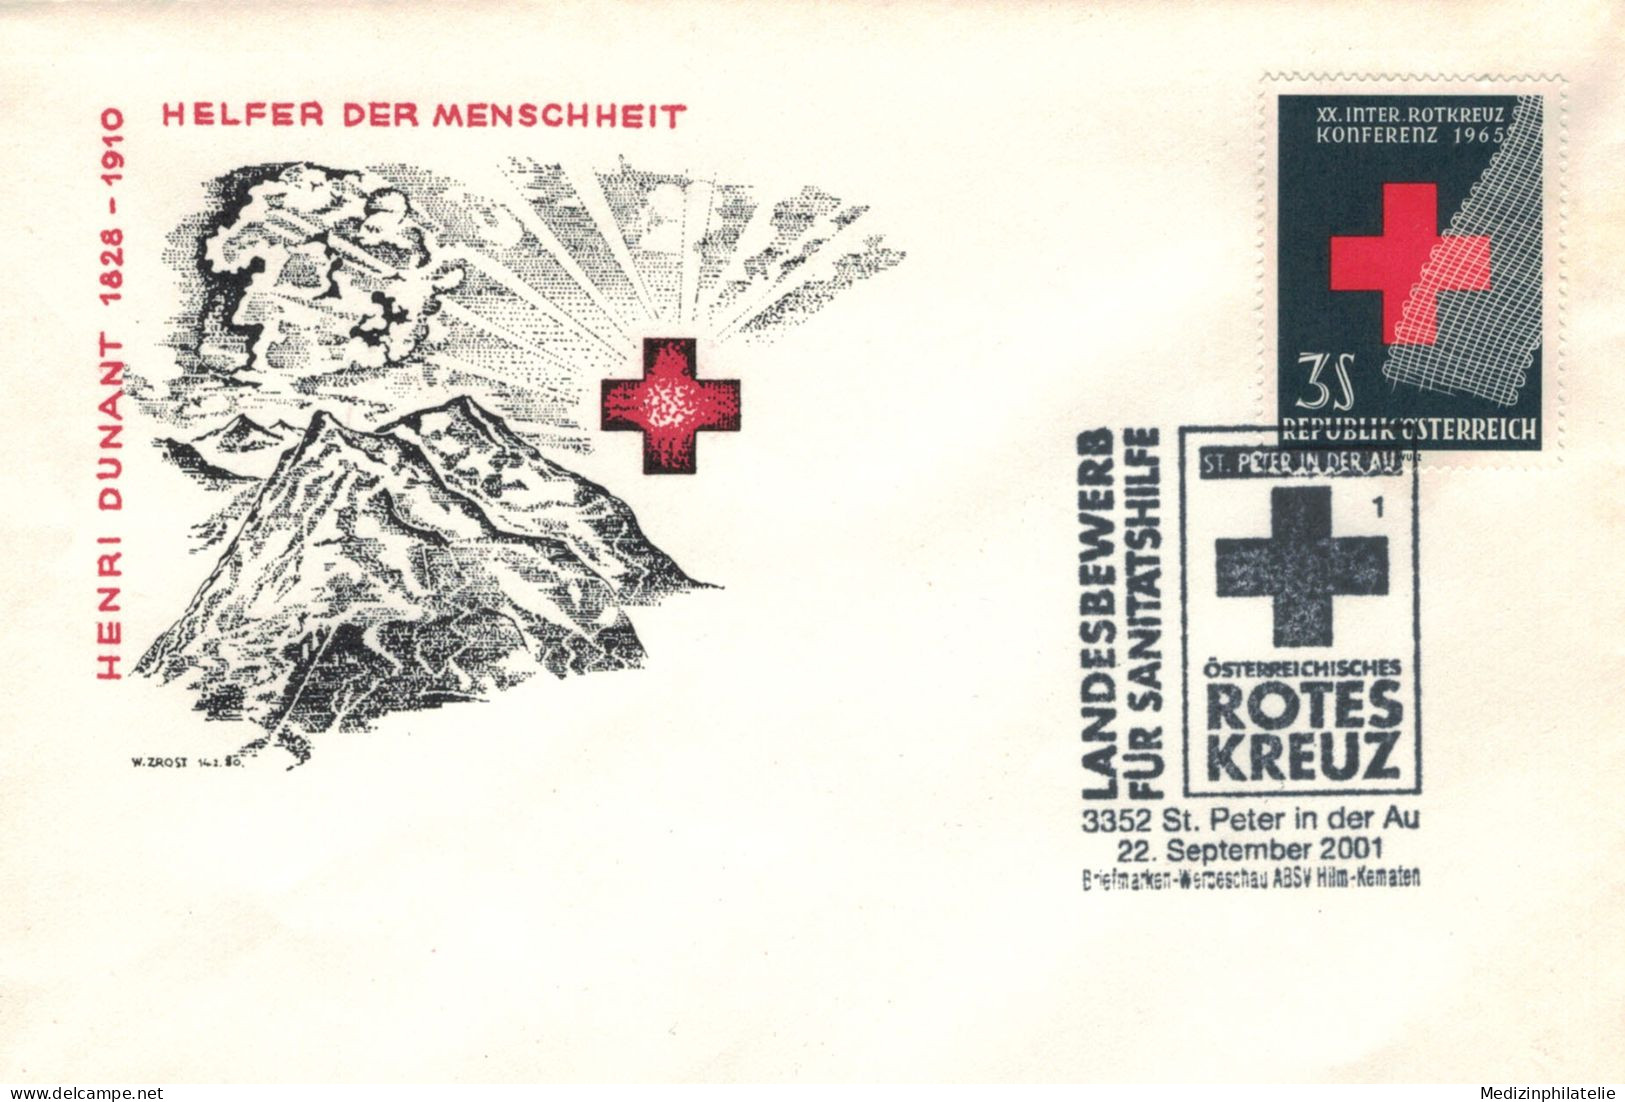 Rotes Kreuz - 3352 St. Peter In Der Au 2001 - Erste Hilfe